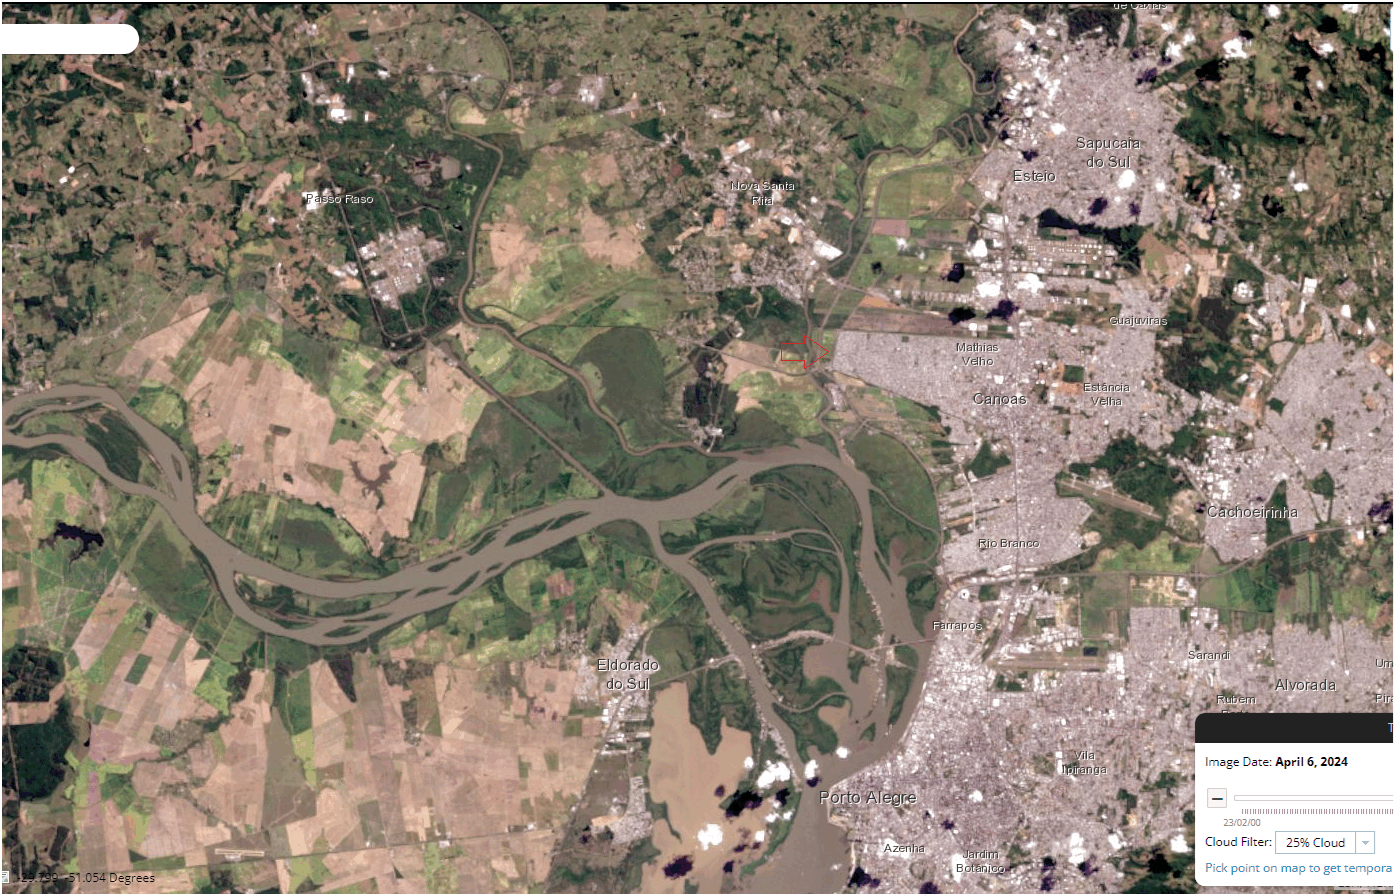 A cobertura de nuvens finalmente retrocedeu ontem (6 de maio) no RS e o Sentinel-2 bem como o Landsat 8 conseguiram capturar algumas imagens assustadoras do nível das inundações históricas que afetaram o RS em Maio de 2024. Abaixo vemos a capital Porto Alegre em alguns recortes que mostram o nível de devastação: